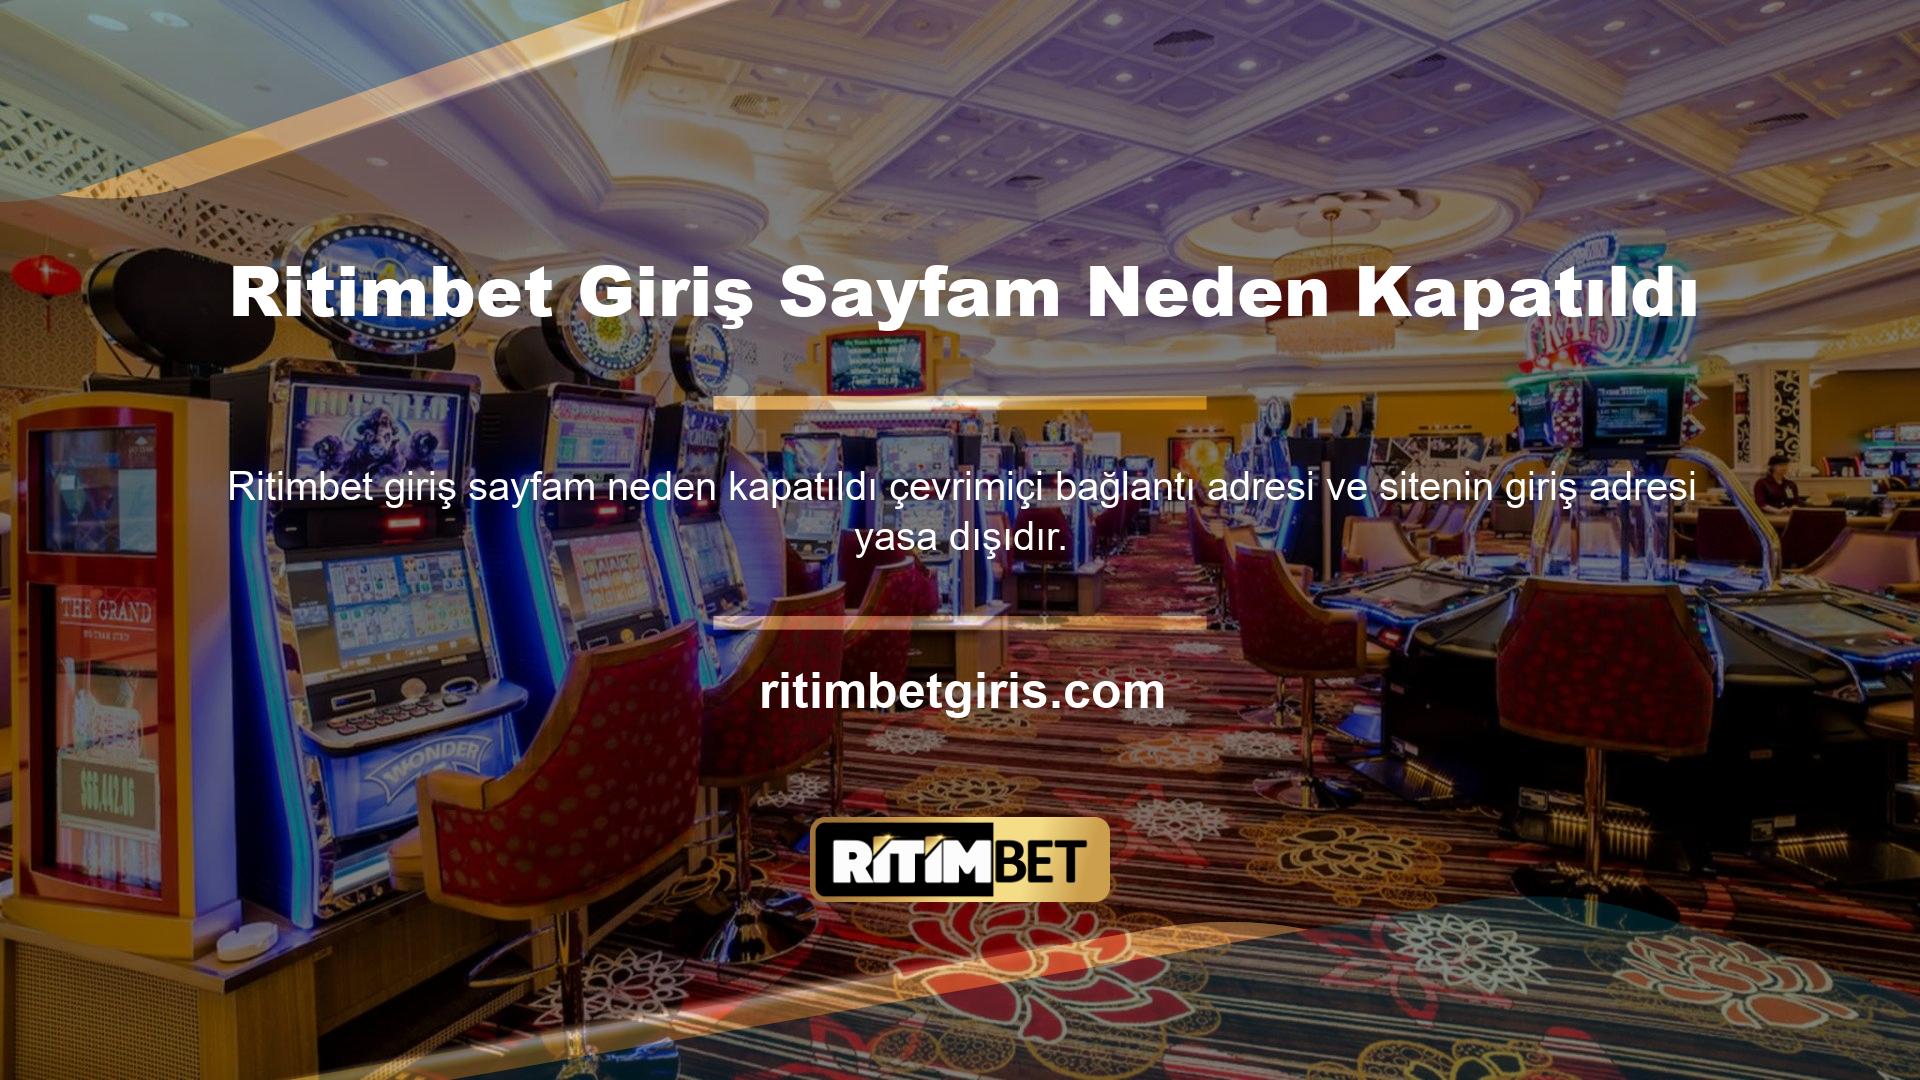 Casino oyuncuları engelleme sorunları nedeniyle Ritimbet adreslerine bağlanamıyor